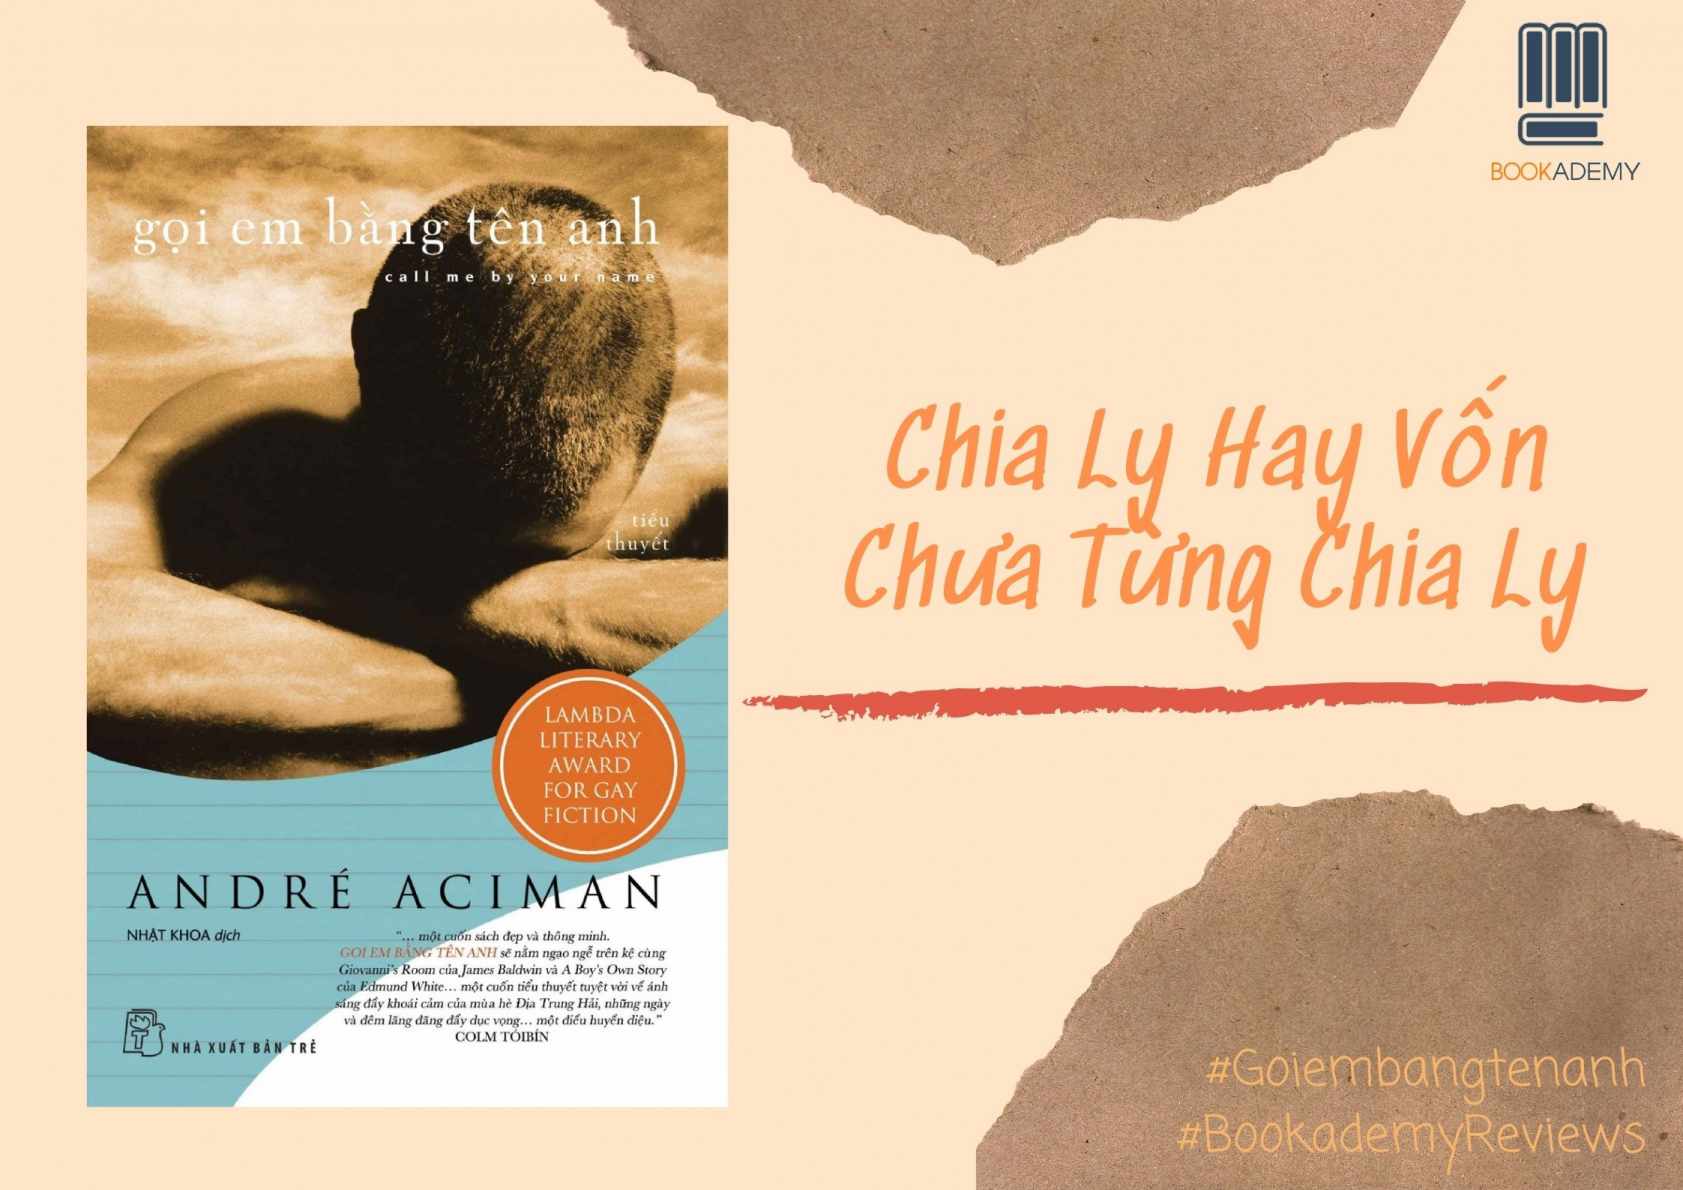 Review Sách] “Gọi Em Bằng Tên Anh”: Chia Ly Hay Vốn Chưa Từng Chia Ly - Ybox